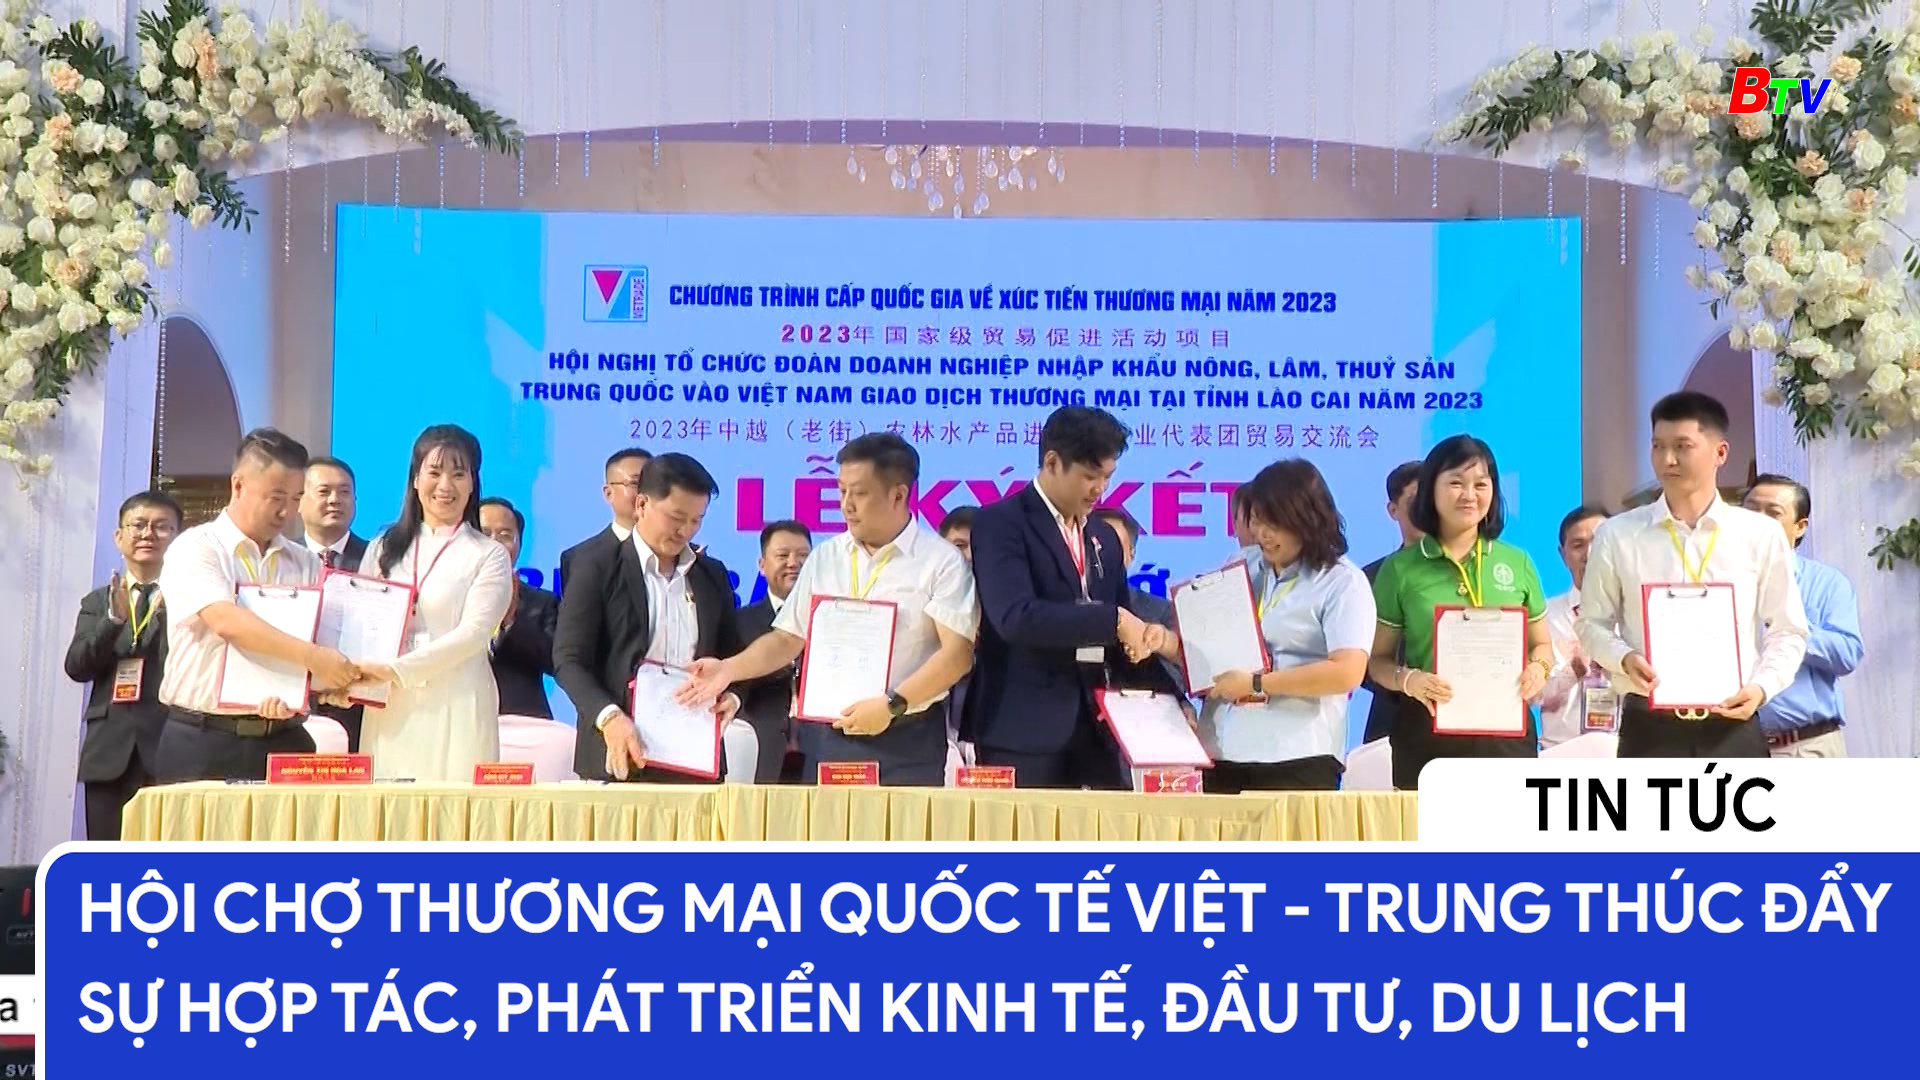 Hội chợ thương mại Quốc tế Việt - Trung thúc đẩy sự hợp tác, phát triển kinh tế, đầu tư, du lịch	